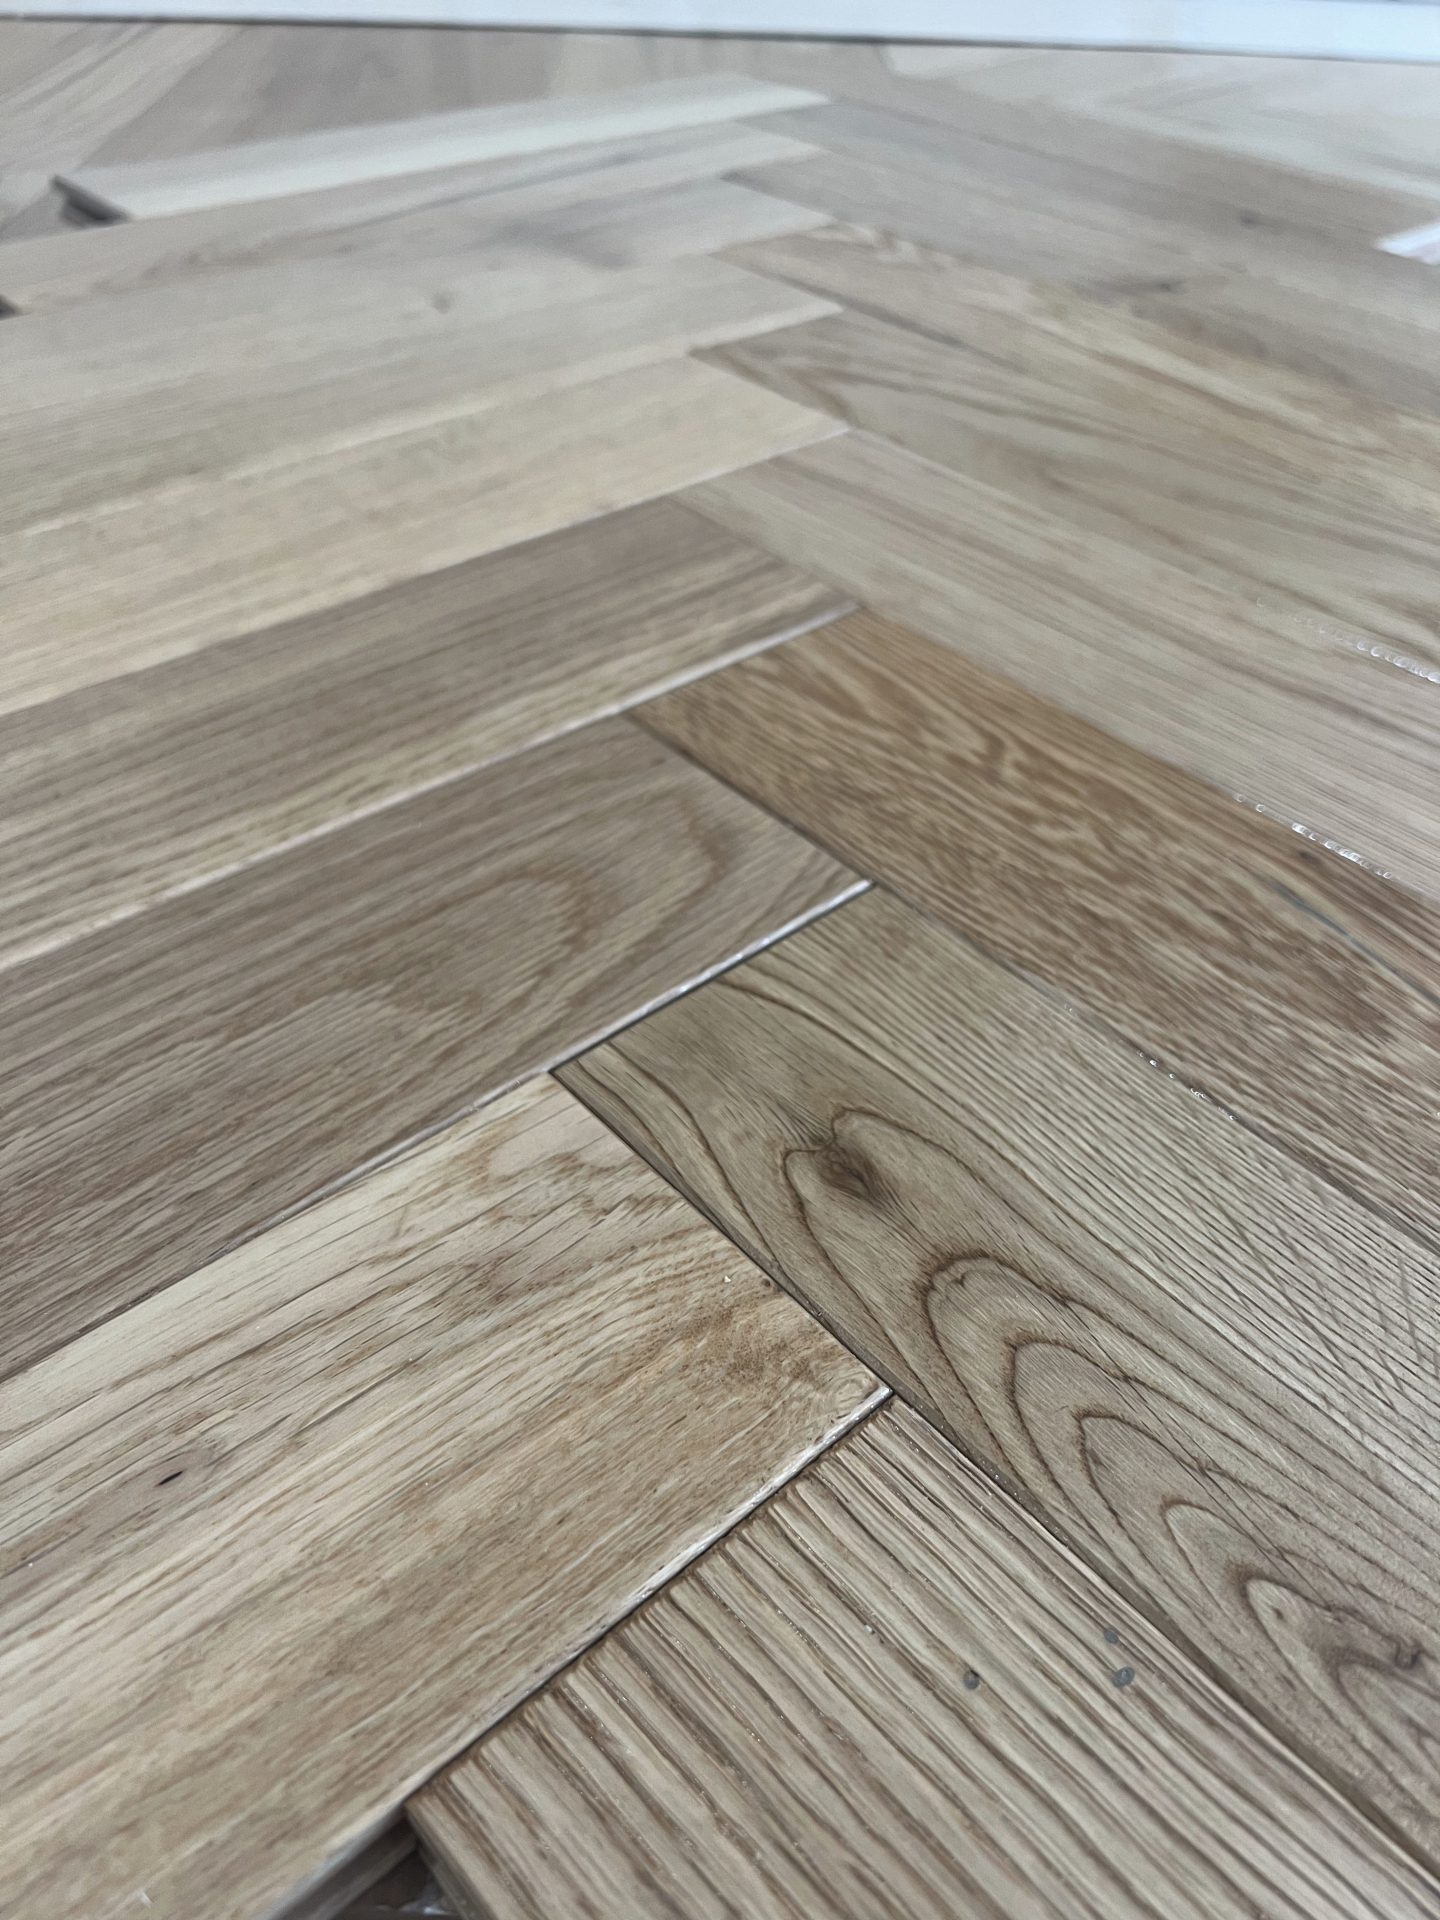 Natural Oak 4/18 x 80mm x 400mm Parquet Flooring